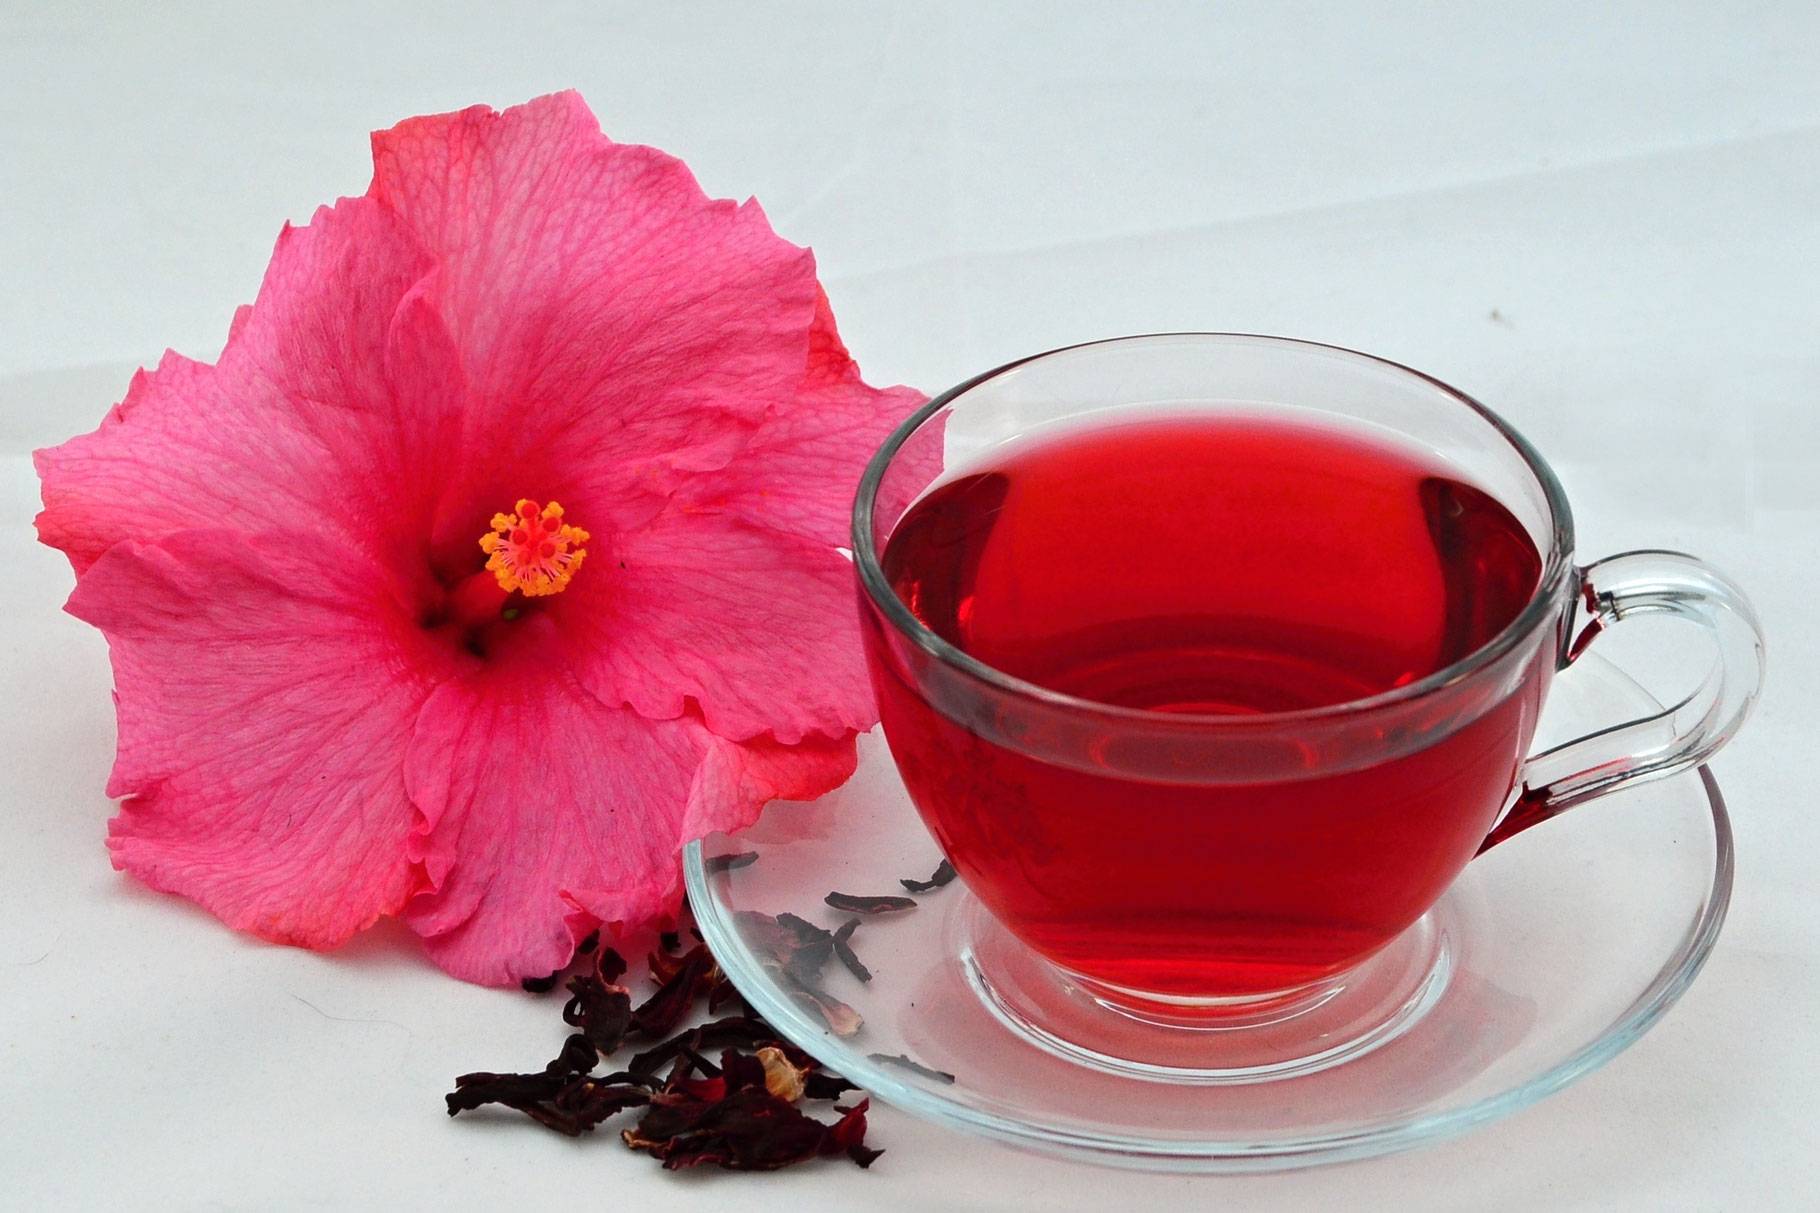 Гранатовый чай из турции: польза и вред, рецепты заваривания